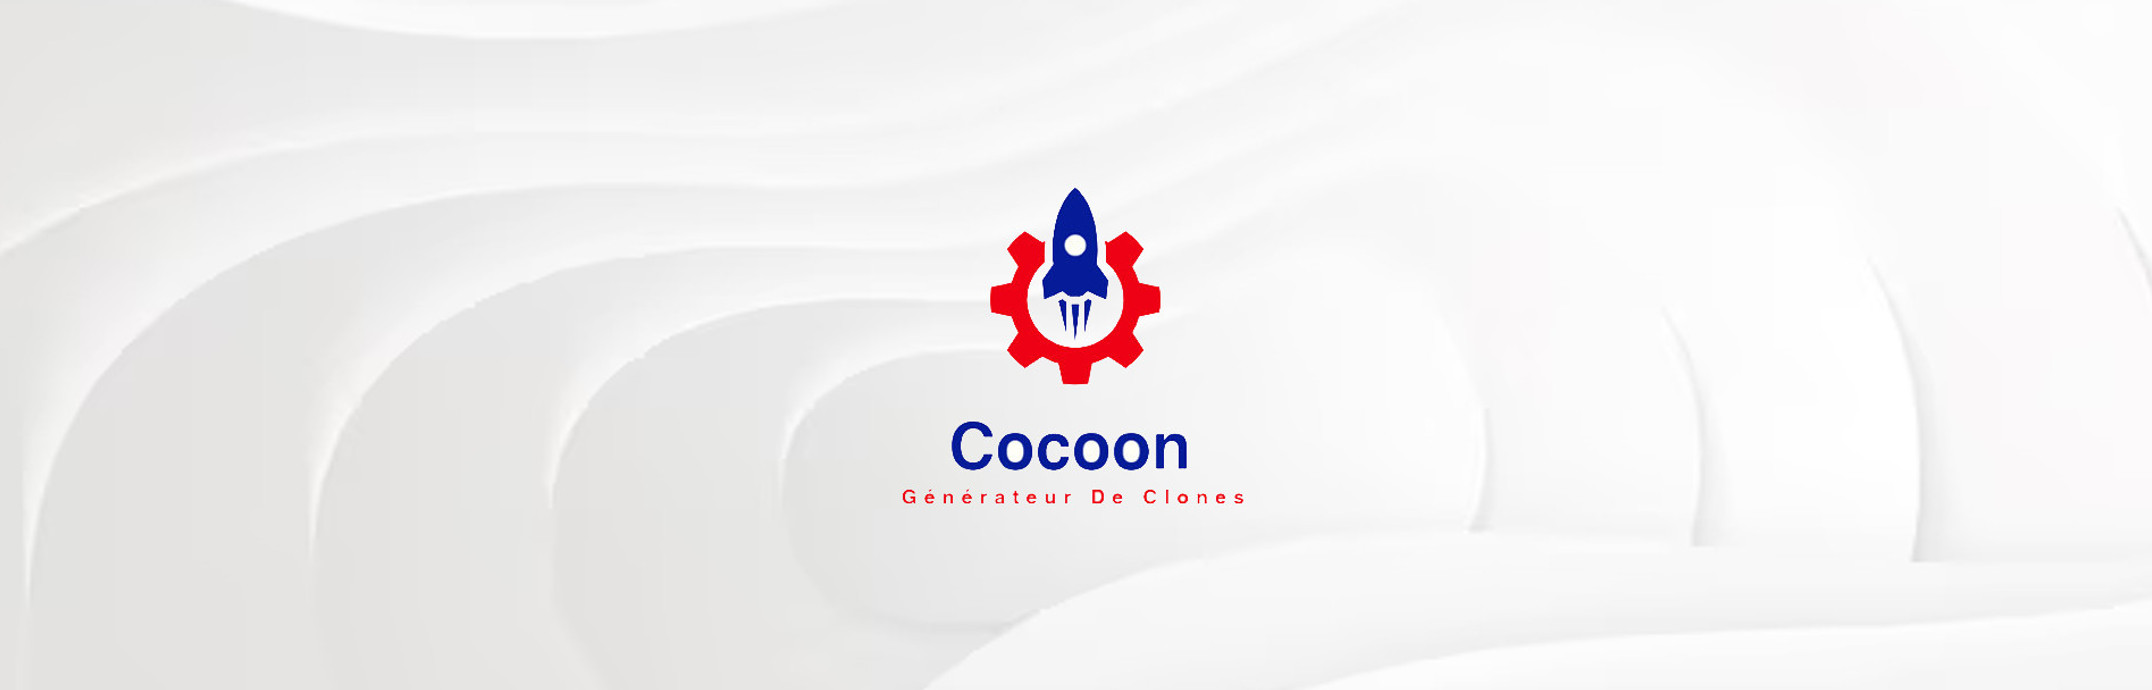 Cocoon, générateur de clones